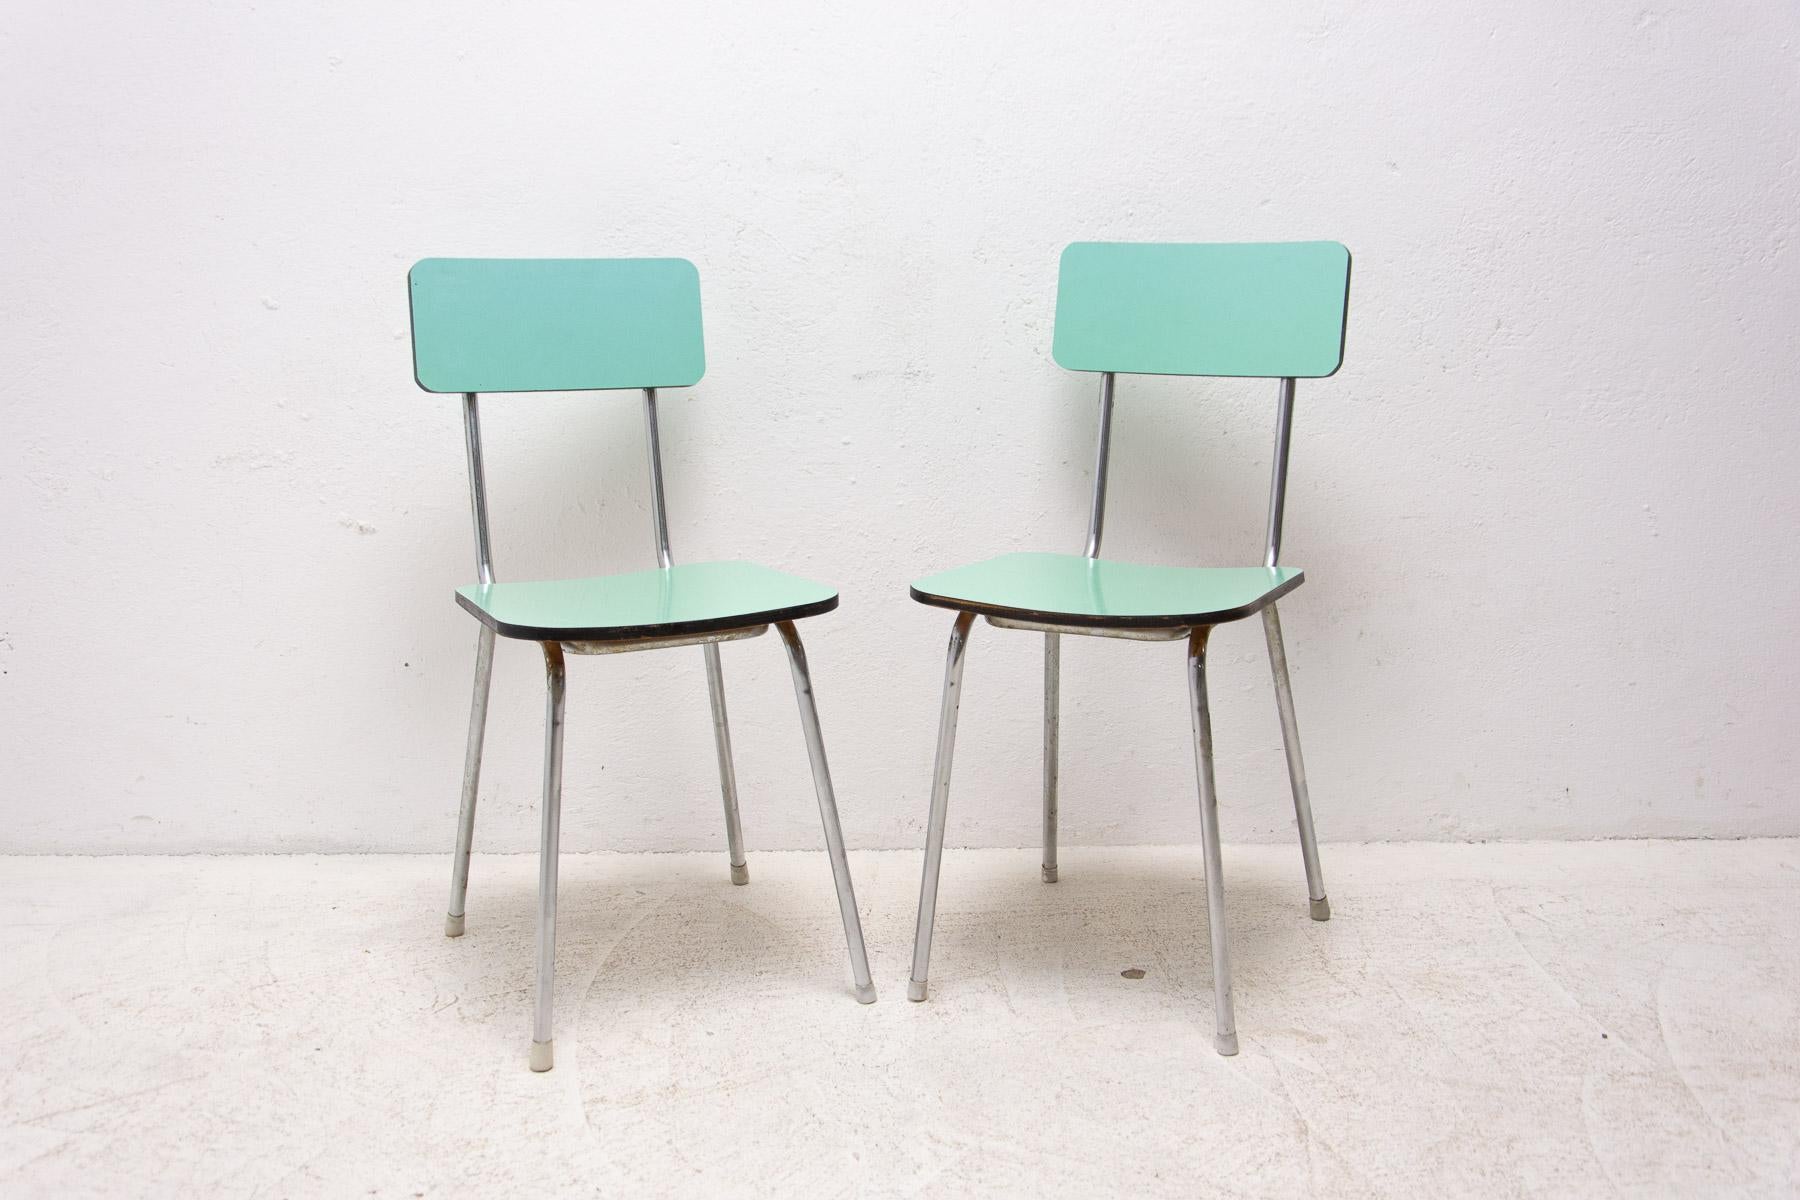 Mitte des Jahrhunderts Farbe Formica Café oder Esszimmer Stühle mit Chrom Beine. Hergestellt in den 1960er Jahren. In sehr gutem Vintage-Zustand. Der Preis gilt für das Paar.

Maße: Höhe: 80 cm

Breite: 35 cm

Tiefe: 43 cm

Sitzhöhe: 45 cm.